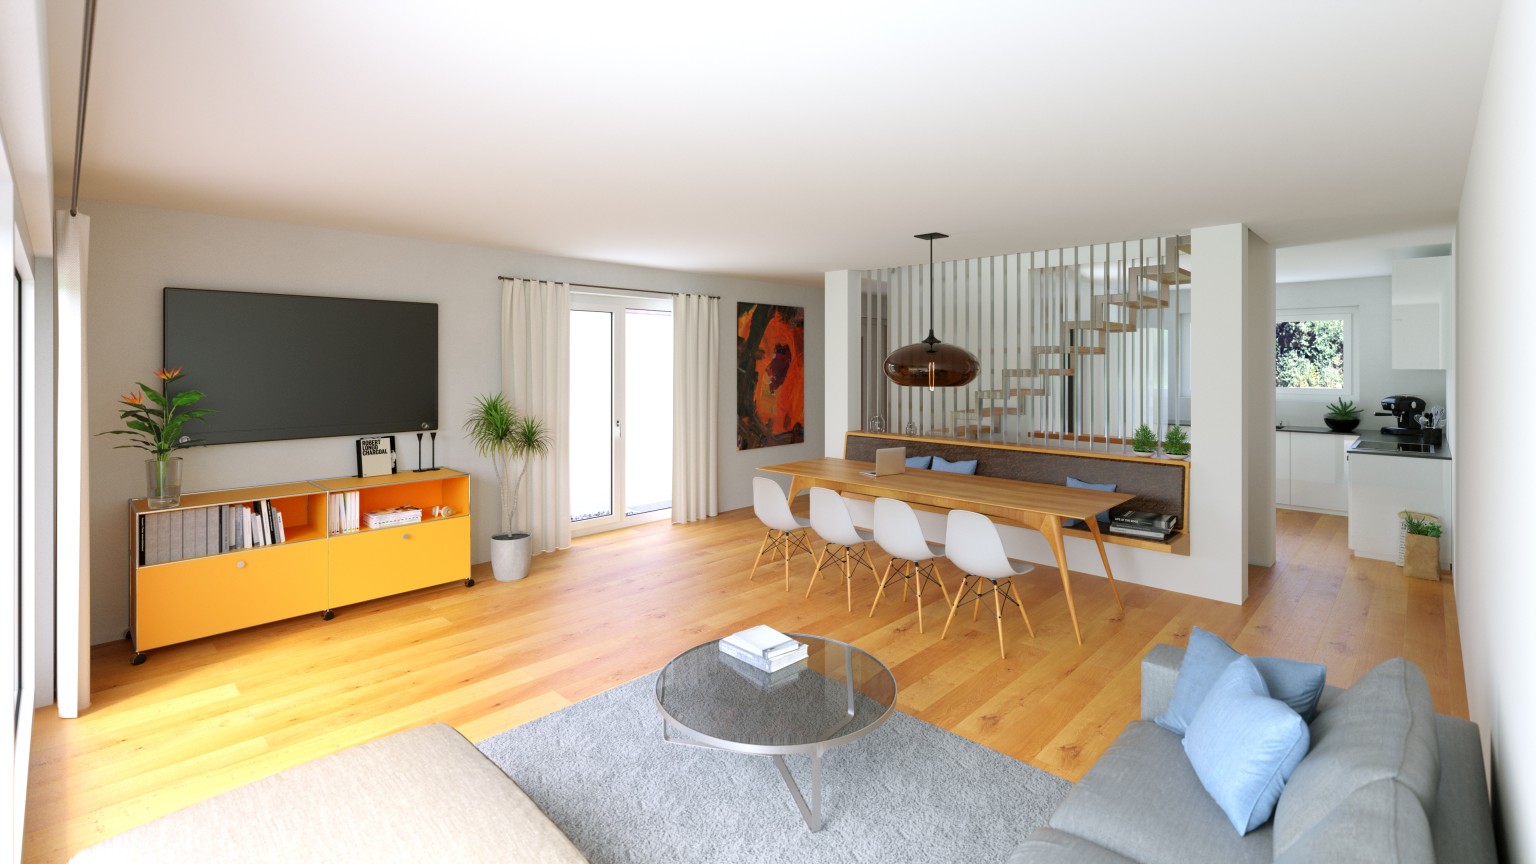 Wohnraum mit Holzboden, Esstisch und Fernsehecke